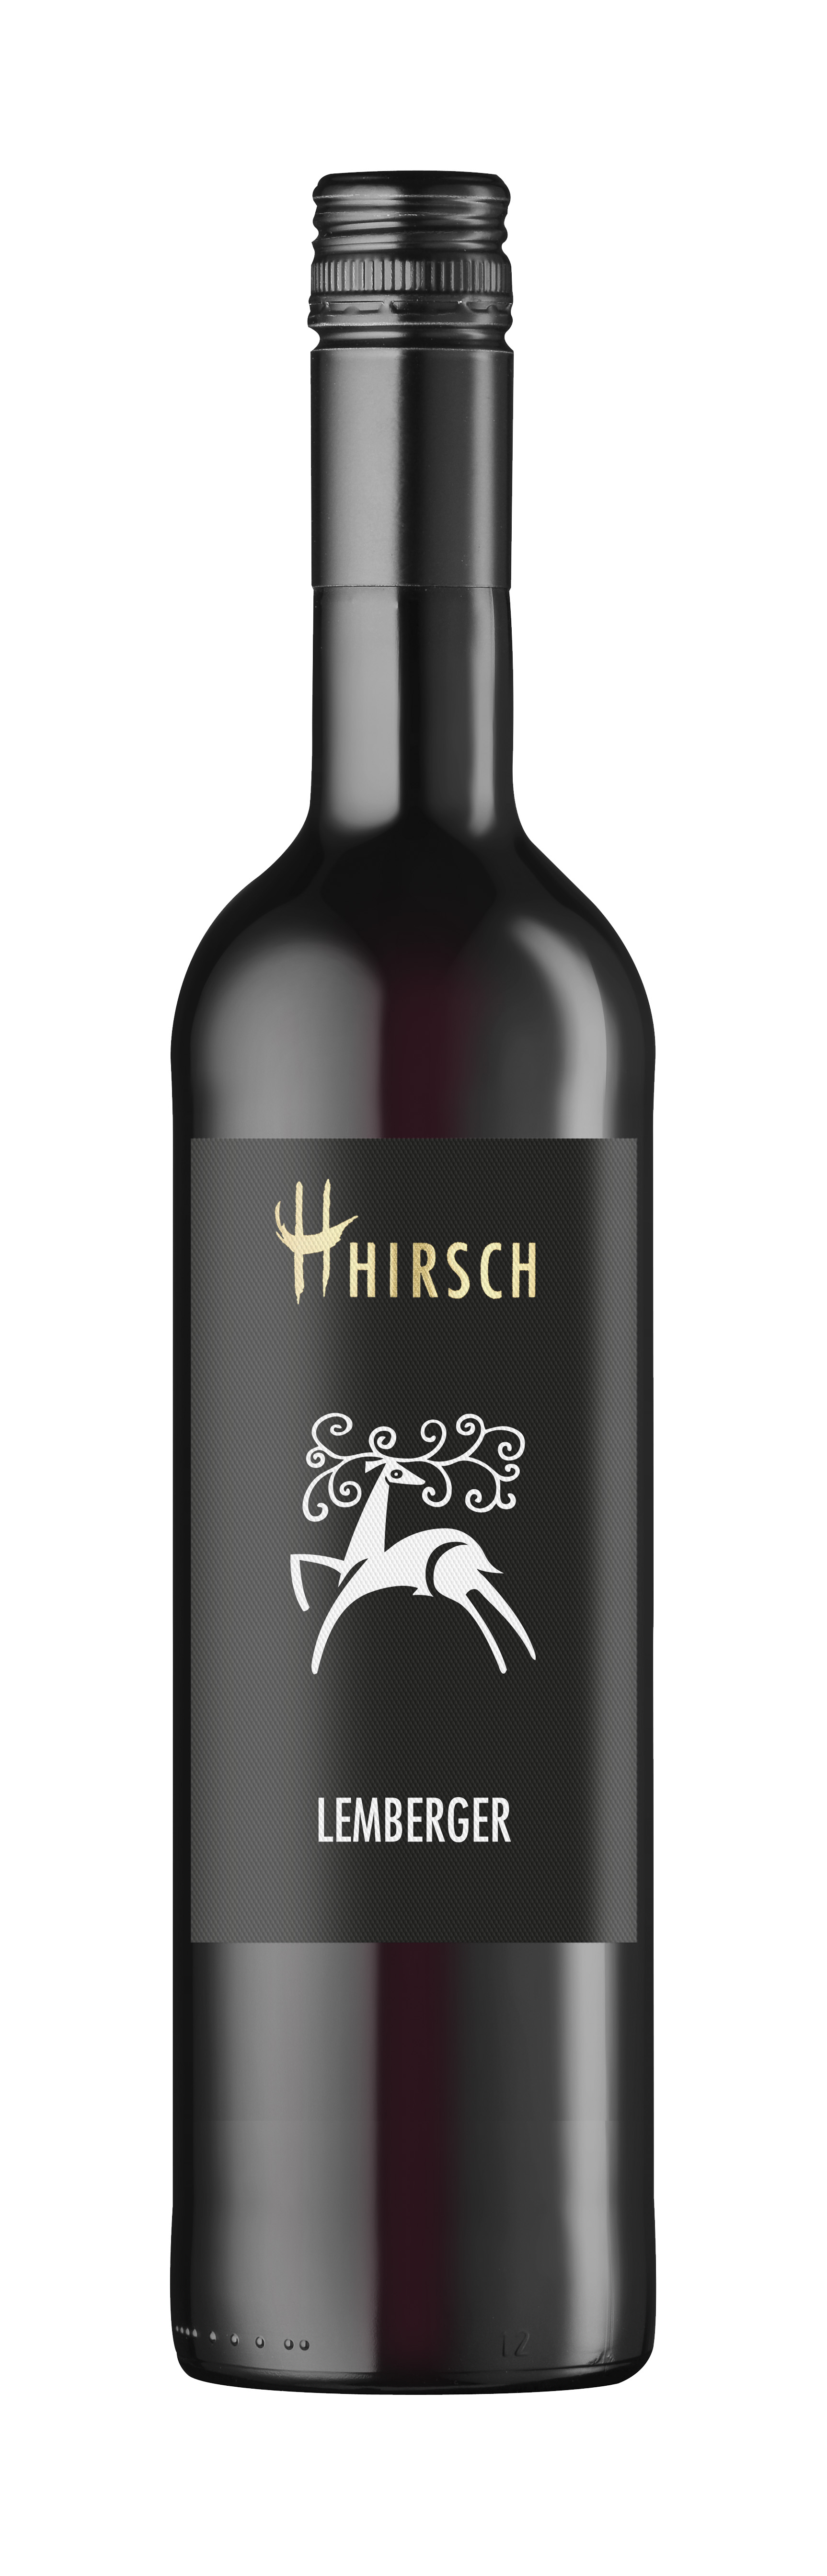 Hirsch Lemberger 2021 trocken "Gutswein" 0,75 L - Rotwein, Leingarten, Württemberger Wein